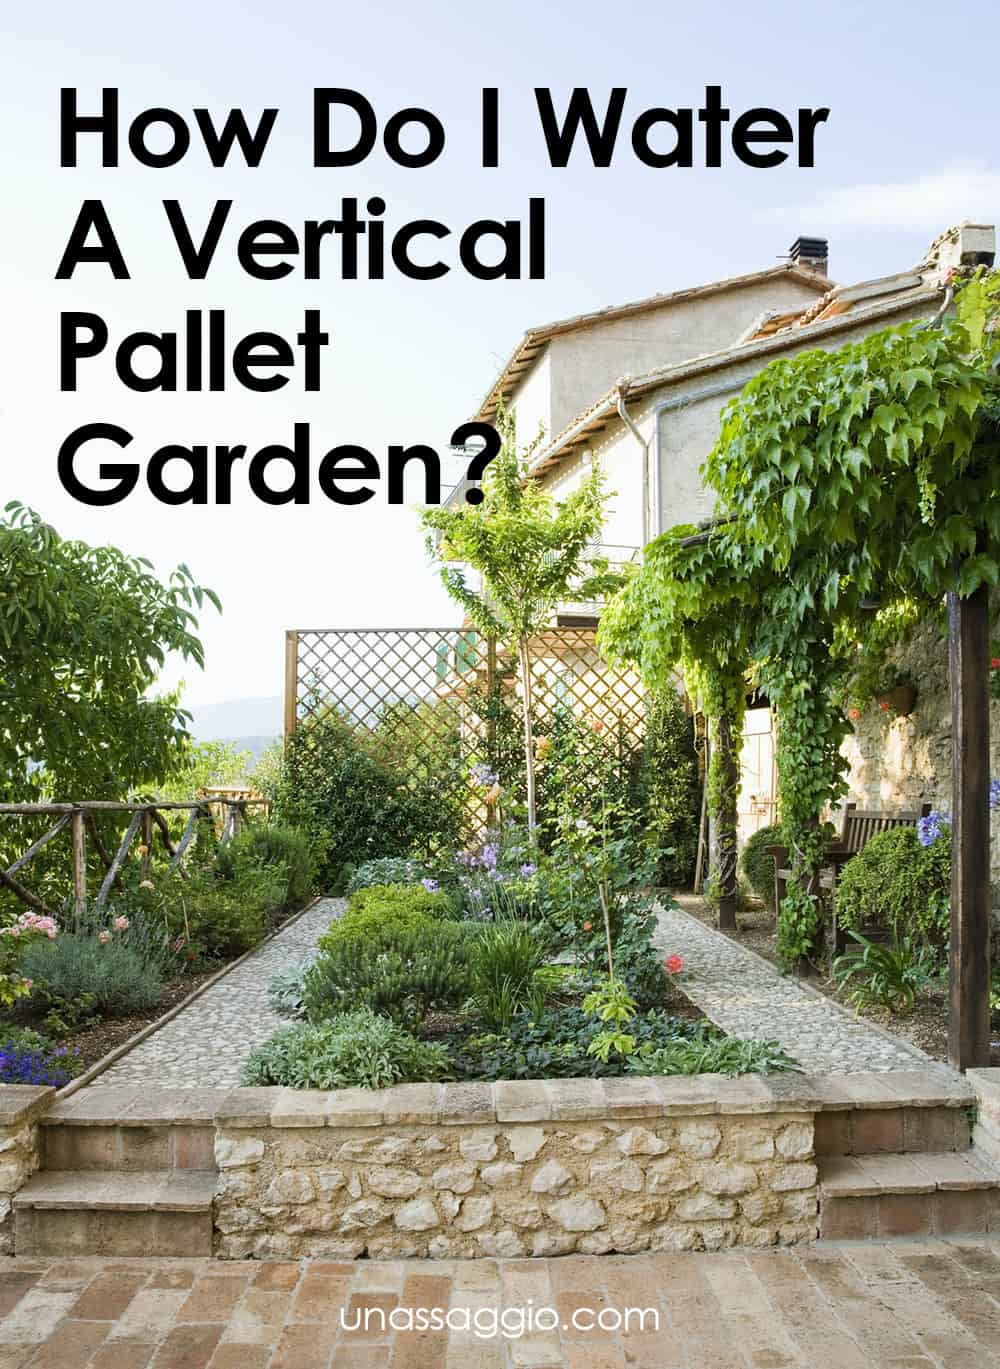 How Do I Water A Vertical Pallet Garden?